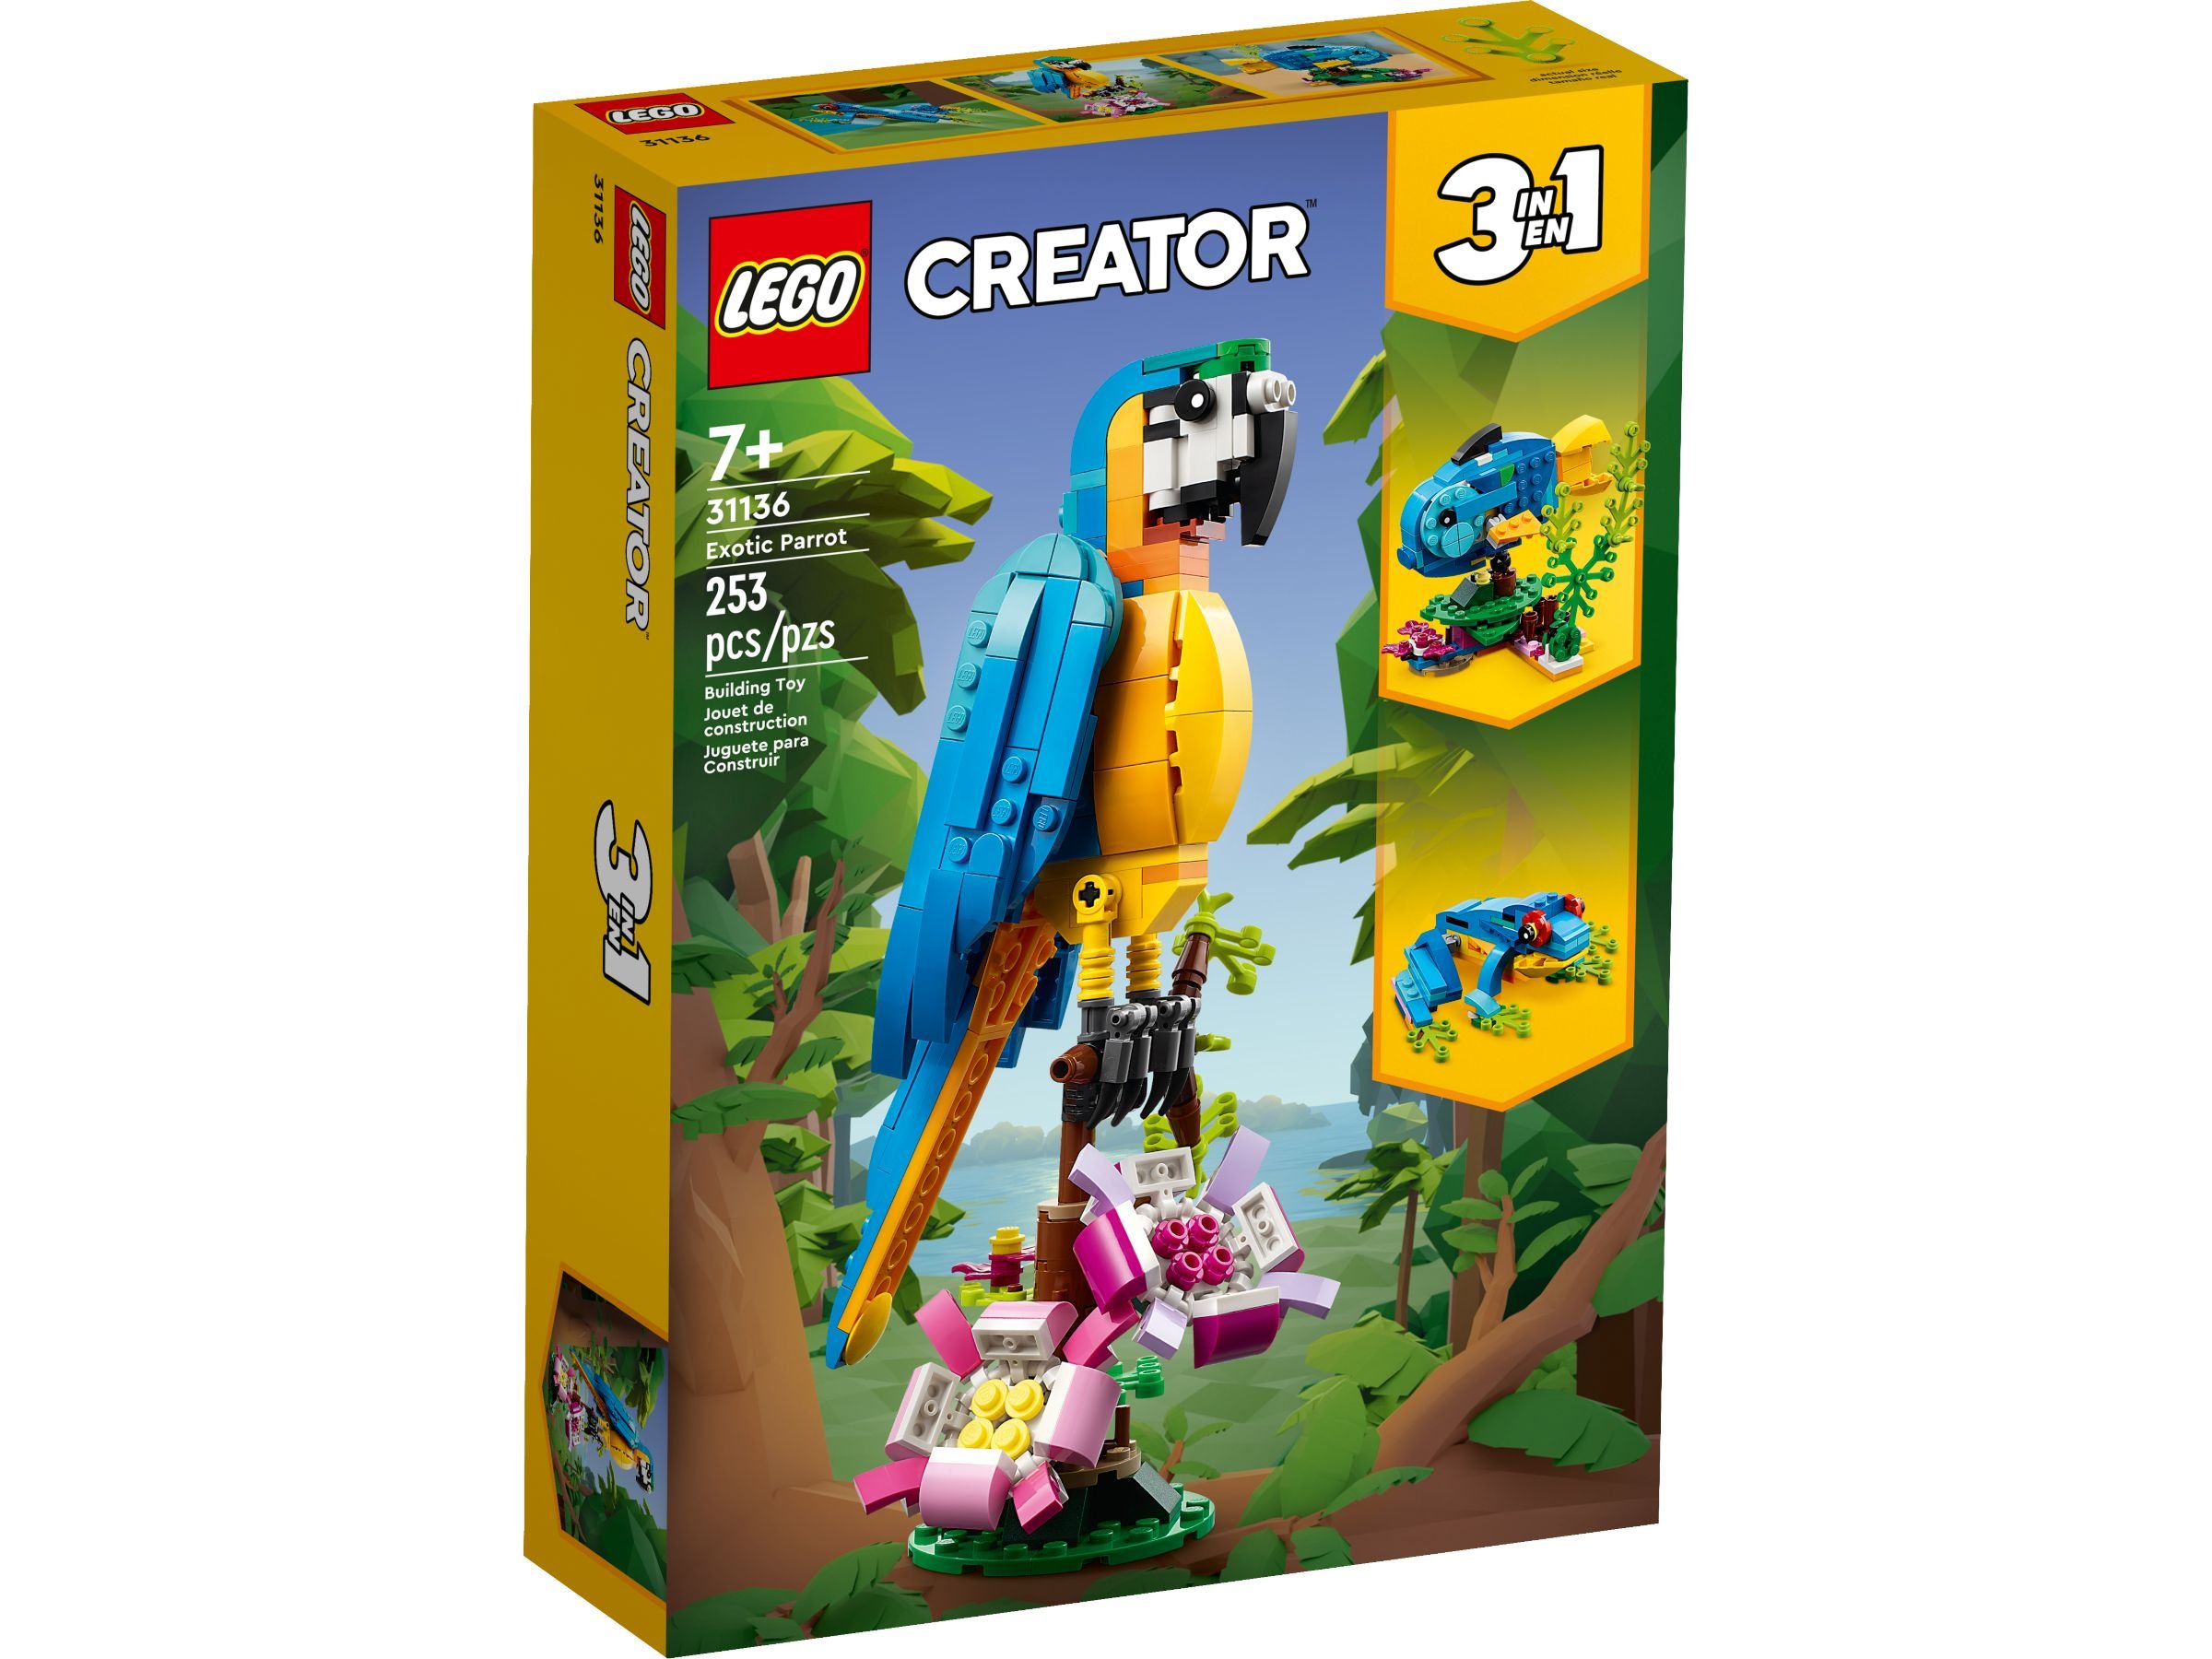 LEGO Creator 31136 Exotischer Papagei LEGO_31136_alt1.jpg